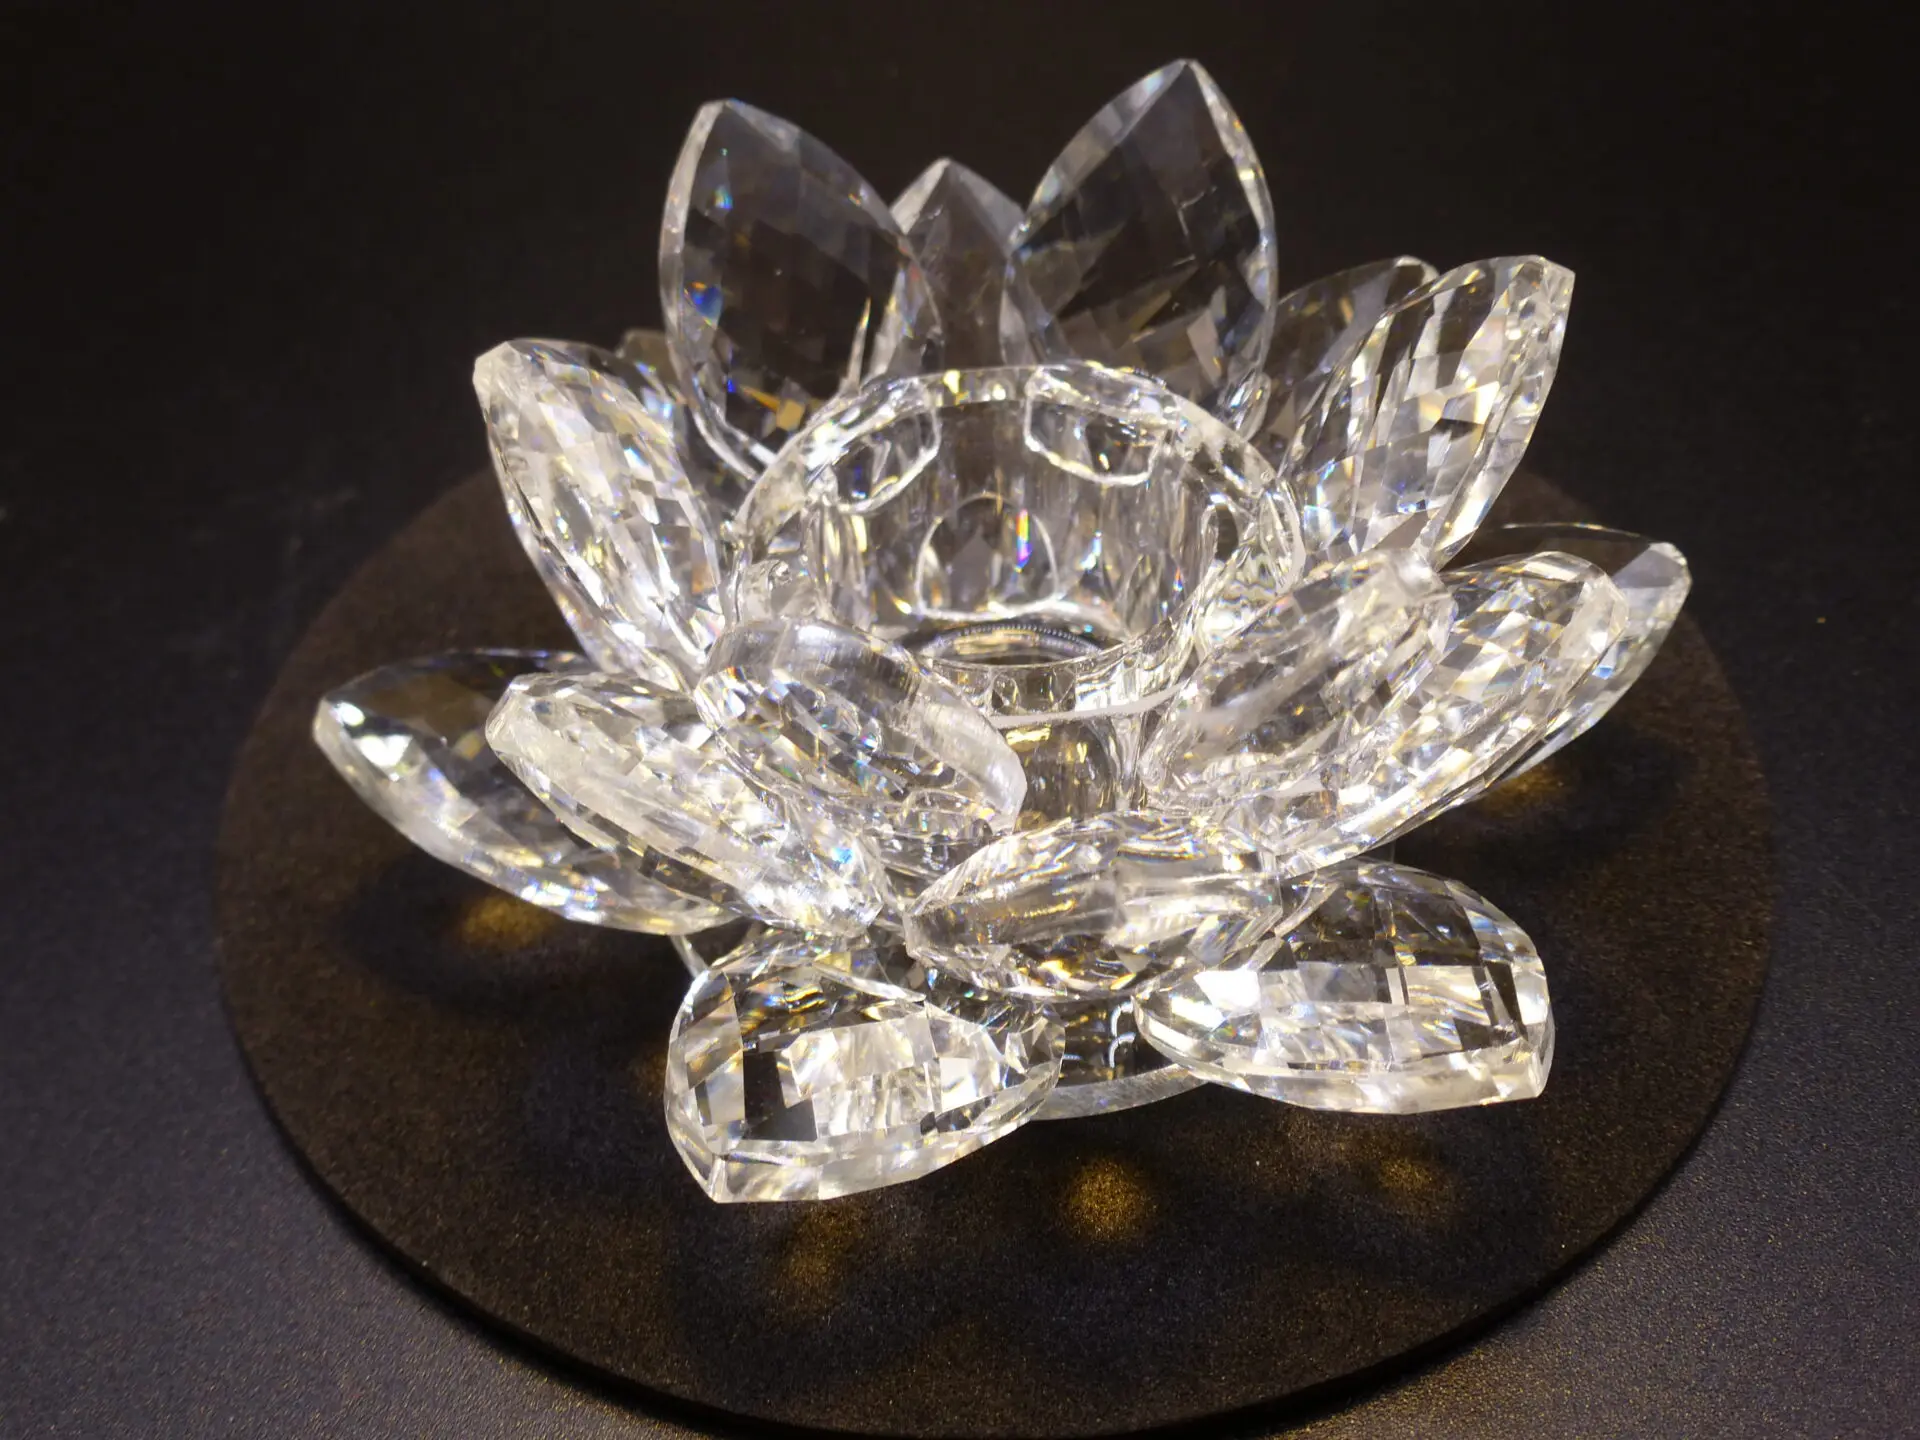 Éclairage d’ambiance Lotus cristal